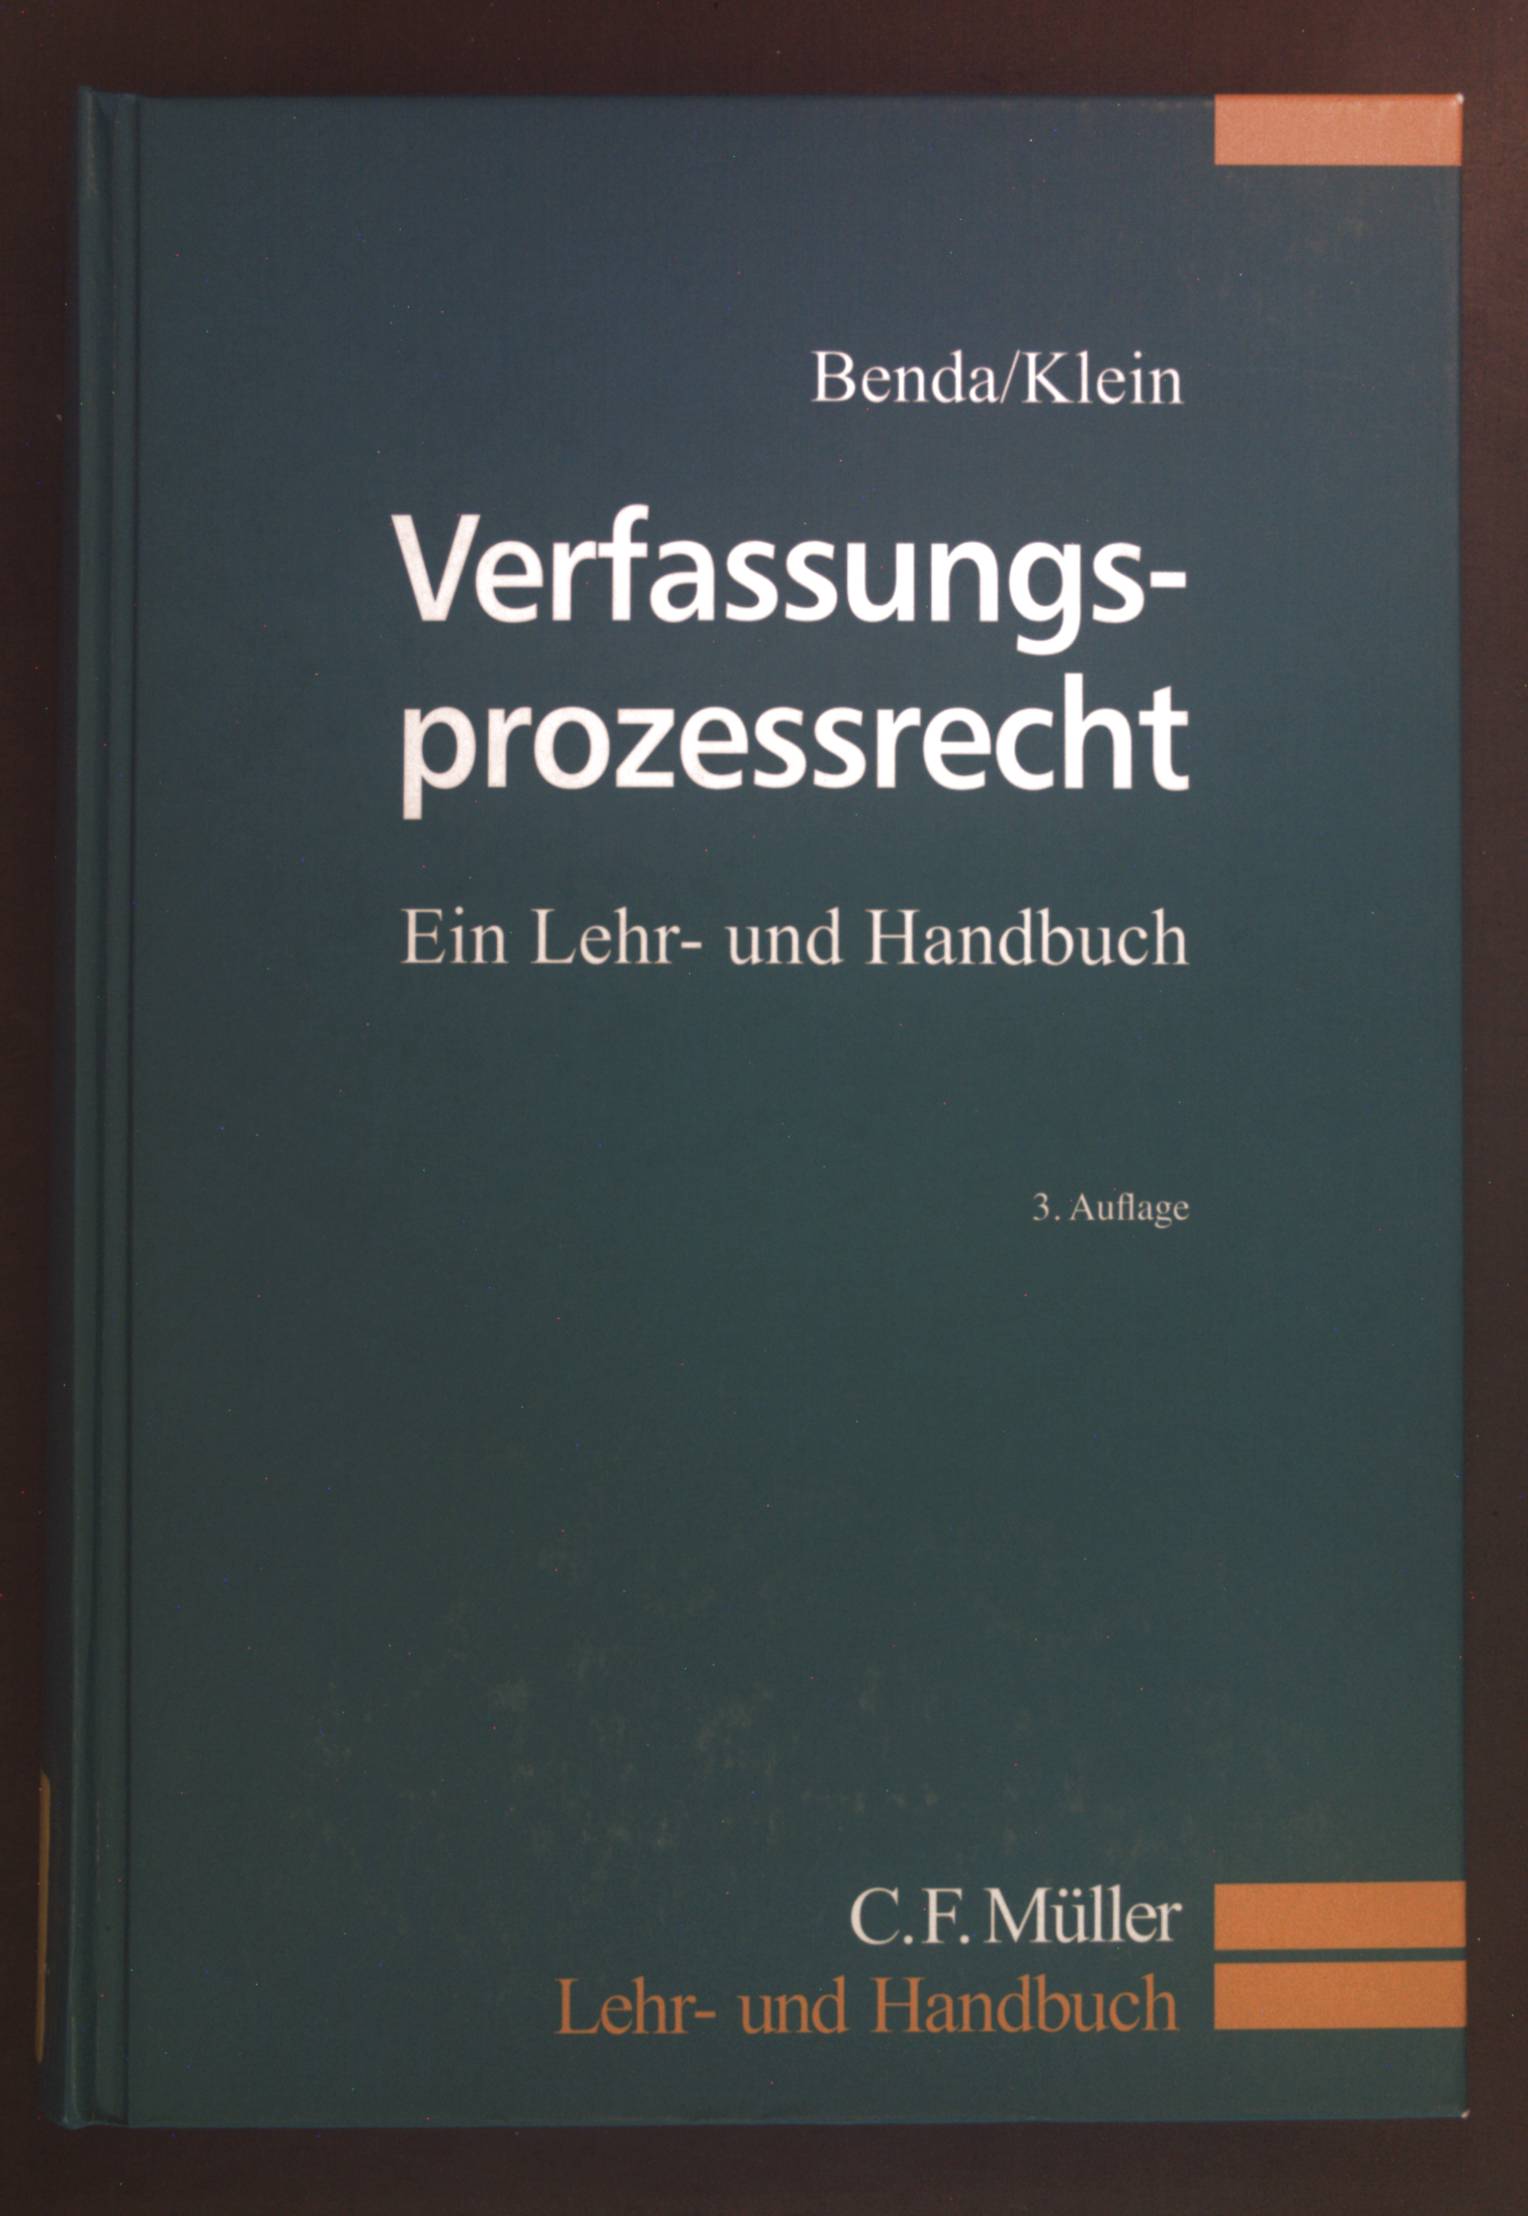 Verfassungsprozessrecht : ein Lehr- und Handbuch. Lehr- und Handbuch 3., völlig neu bearb. Aufl. - Benda, Ernst, Eckart Klein und Oliver Klein